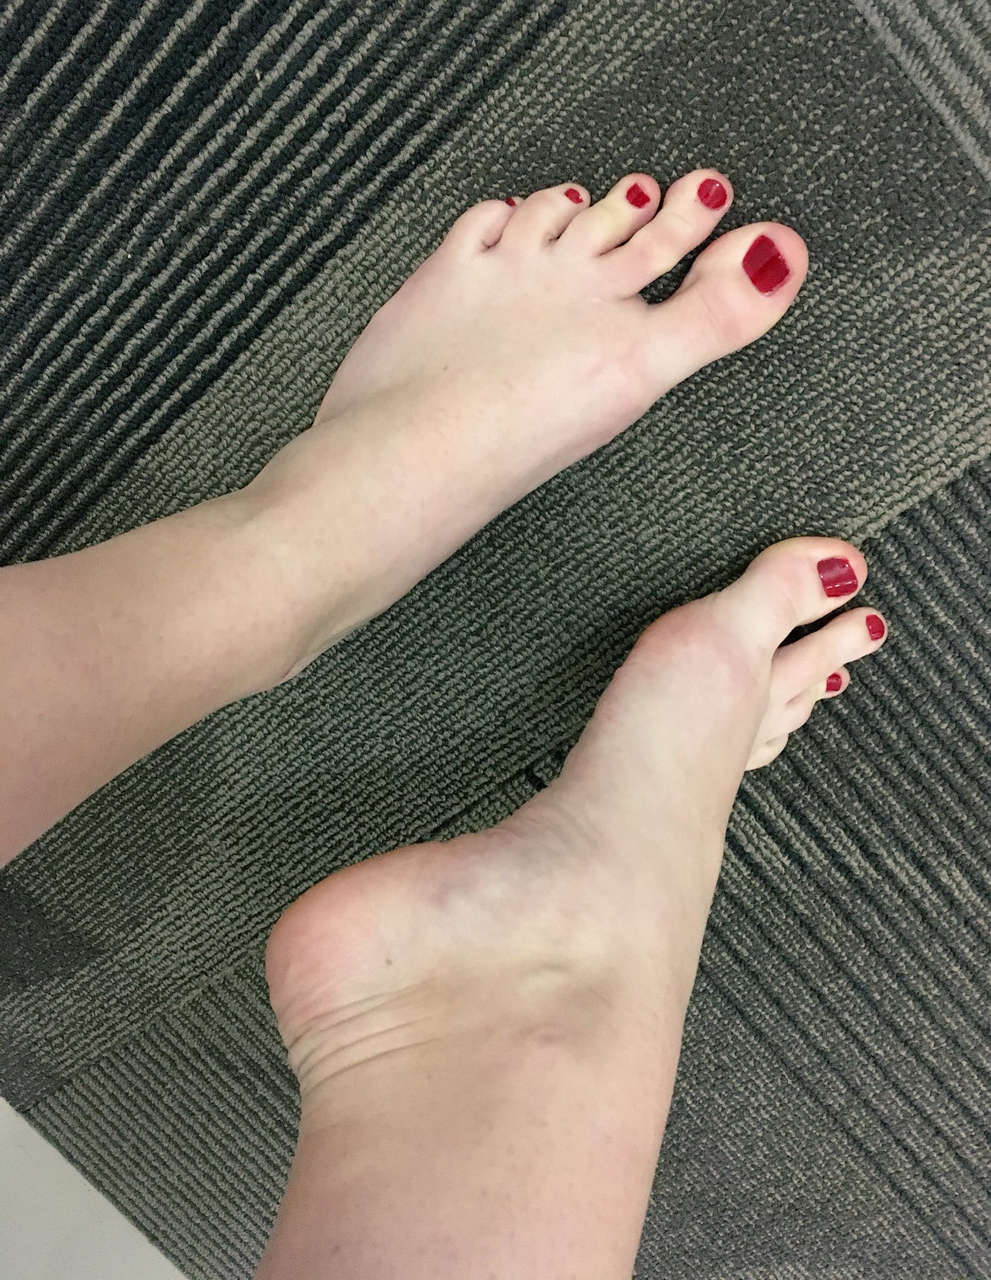 Irene Adller Feet